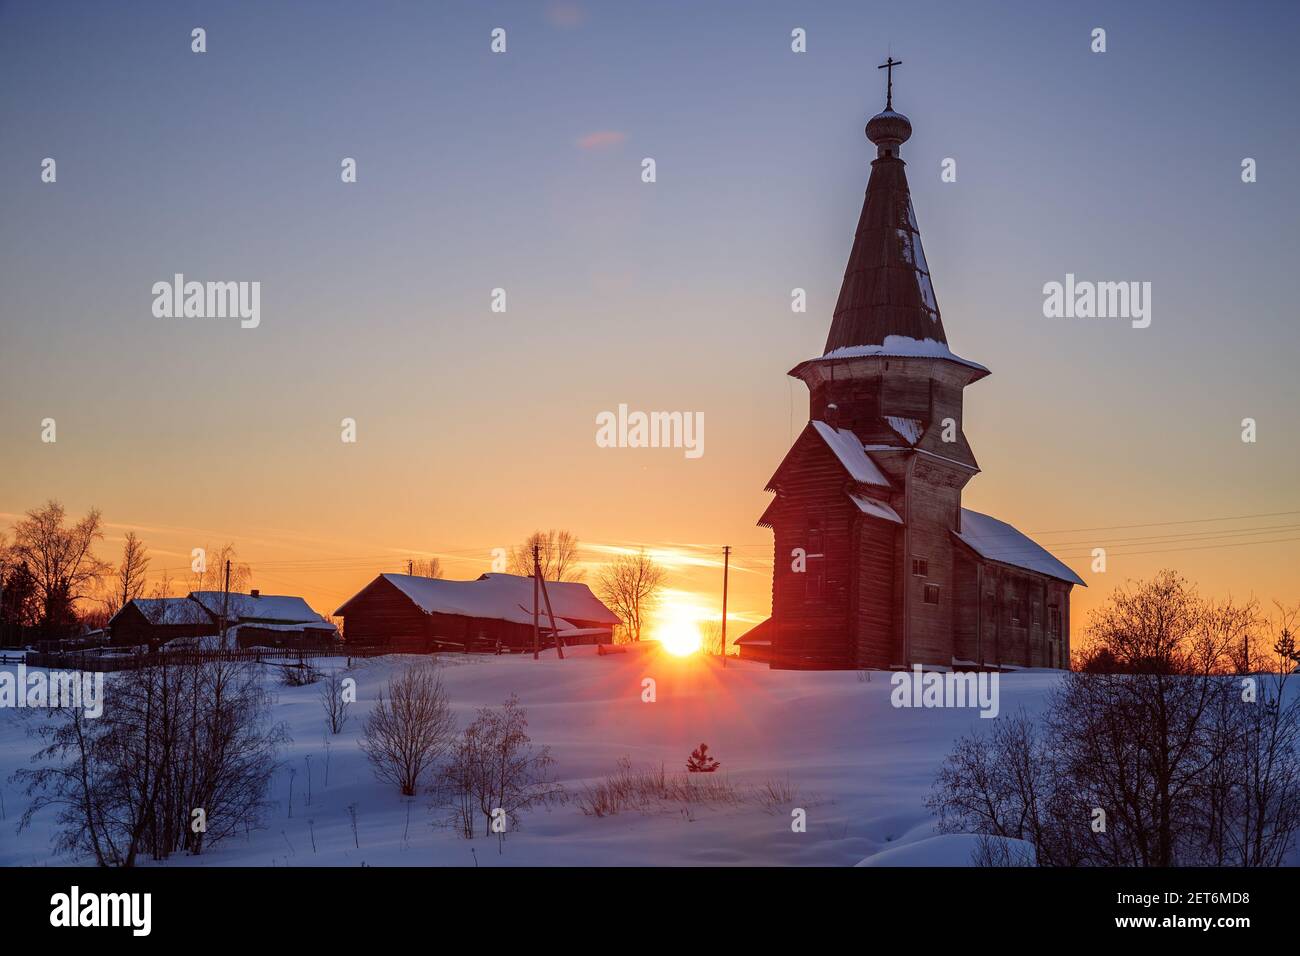 Hiver rural coucher de soleil paysage. L'ancienne église russe en bois d'Élie le Prophète dans le village de Saminsky Pogost, région de Vologda, Russie Banque D'Images